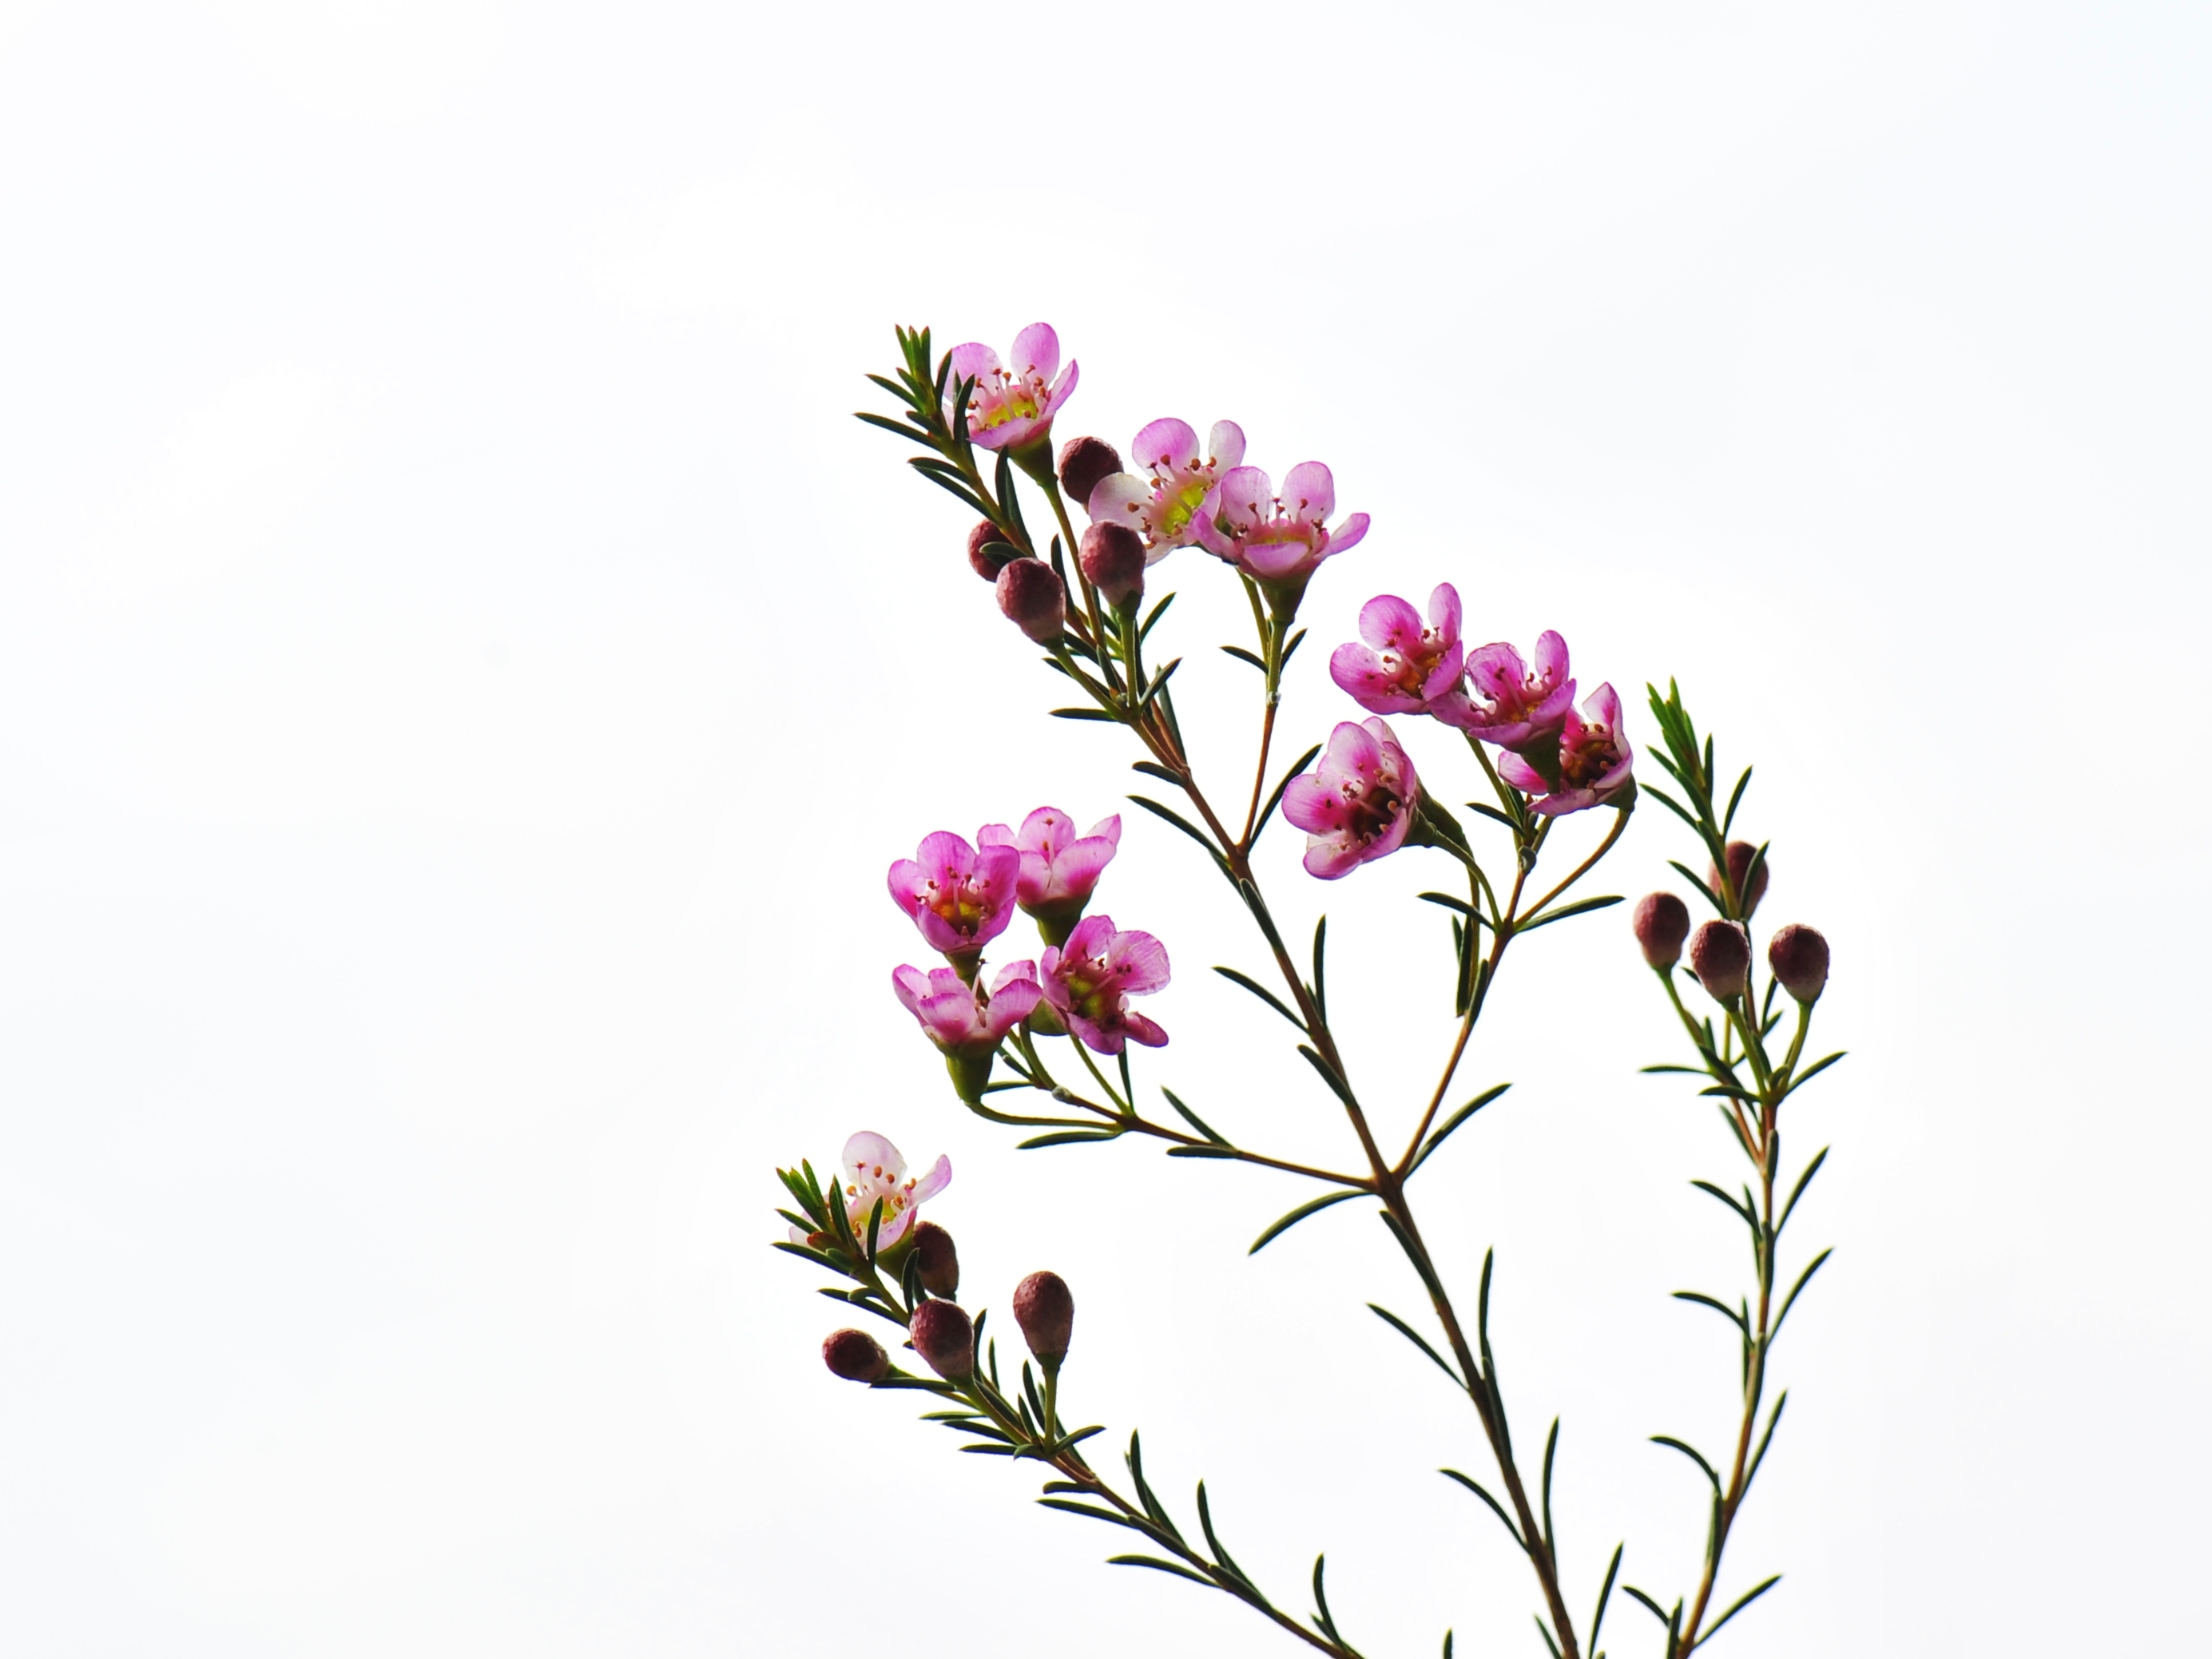 澳梅,来自澳洲西部,原名叫geraldton wax(杰拉尔顿腊花),wax就是蜡